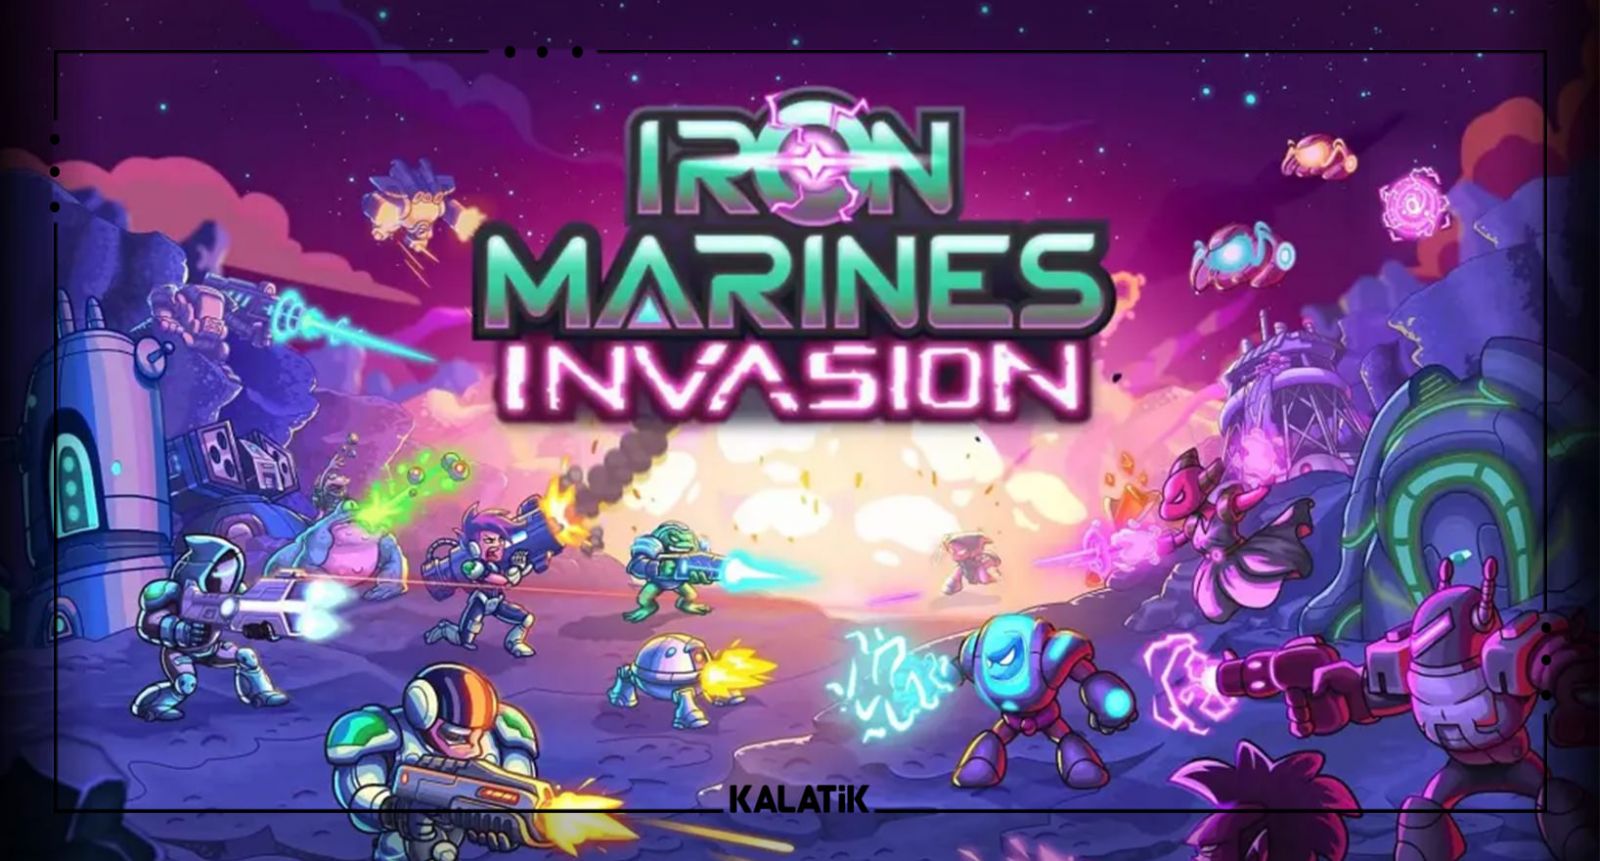 بازی Iron Marines